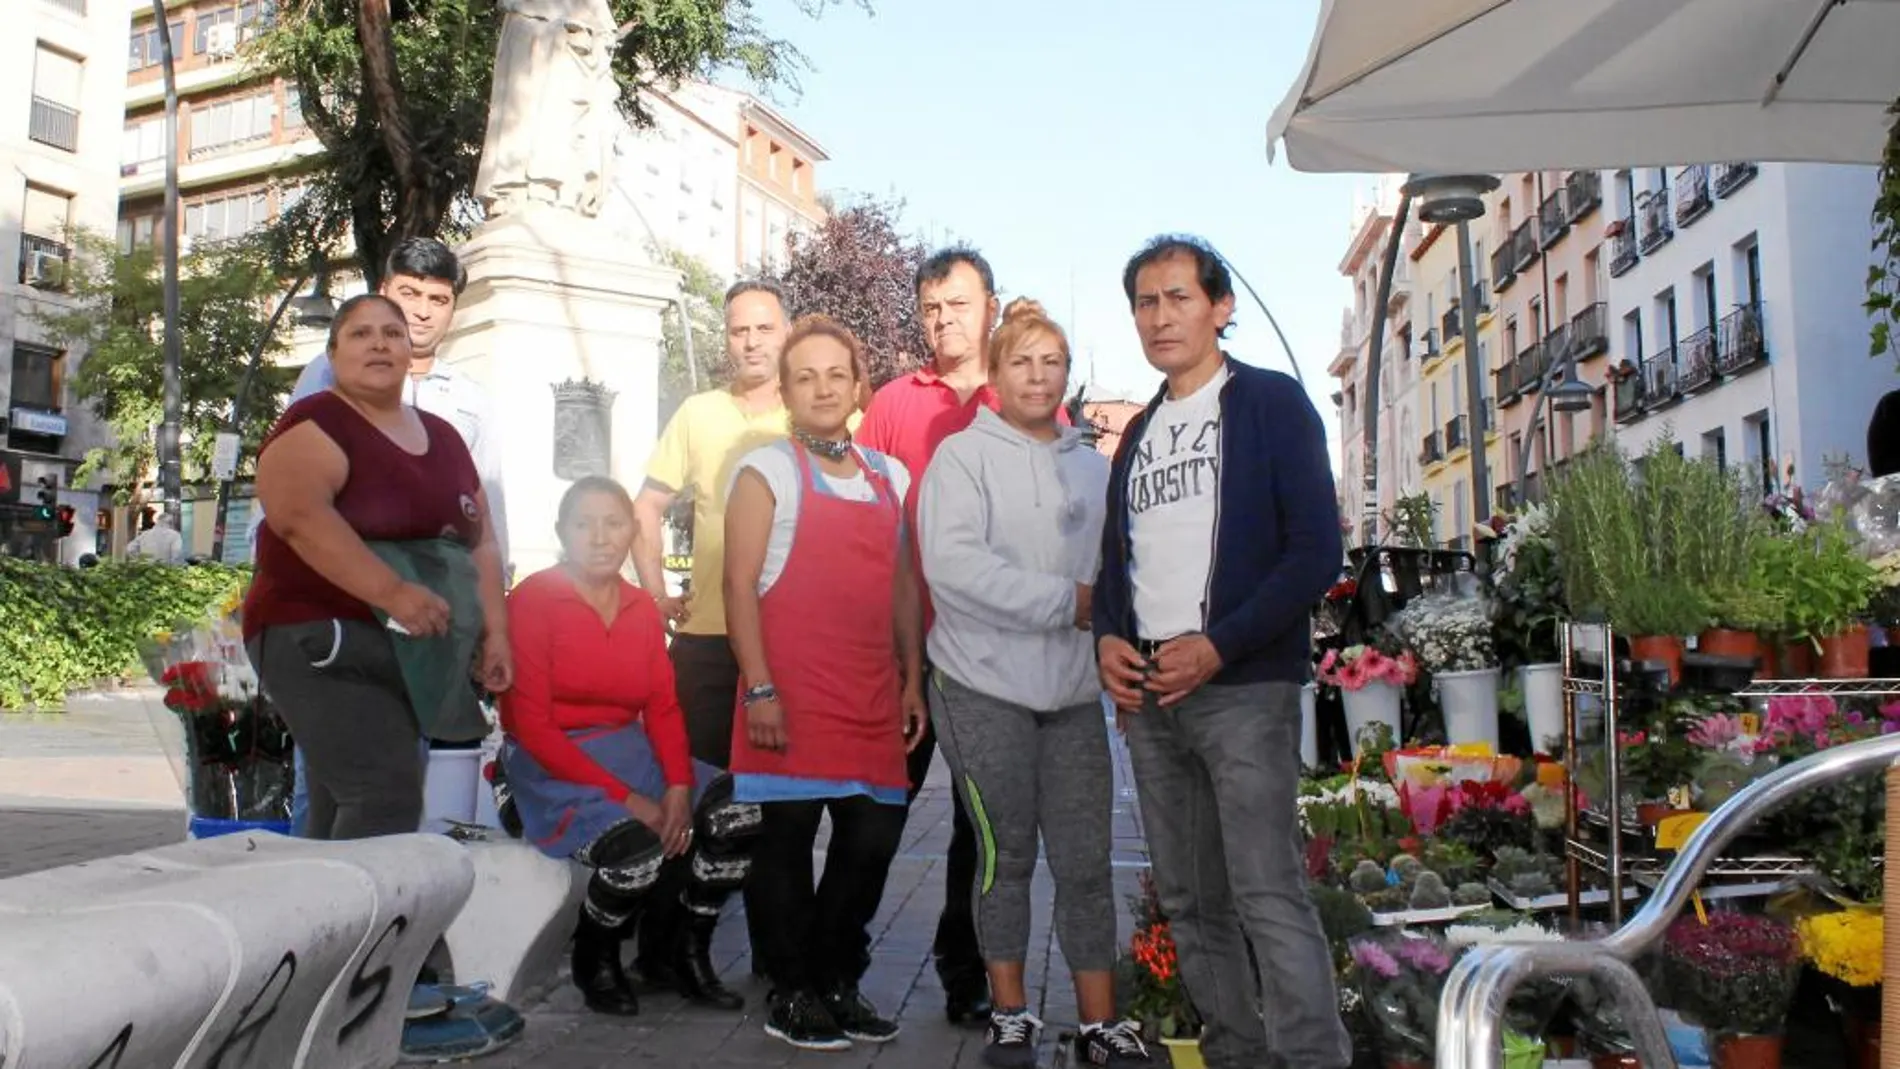 Los floristas de Tirso de Molina están dispuestos a abonar el alquiler directamente al consistorio para poder seguir en la plaza